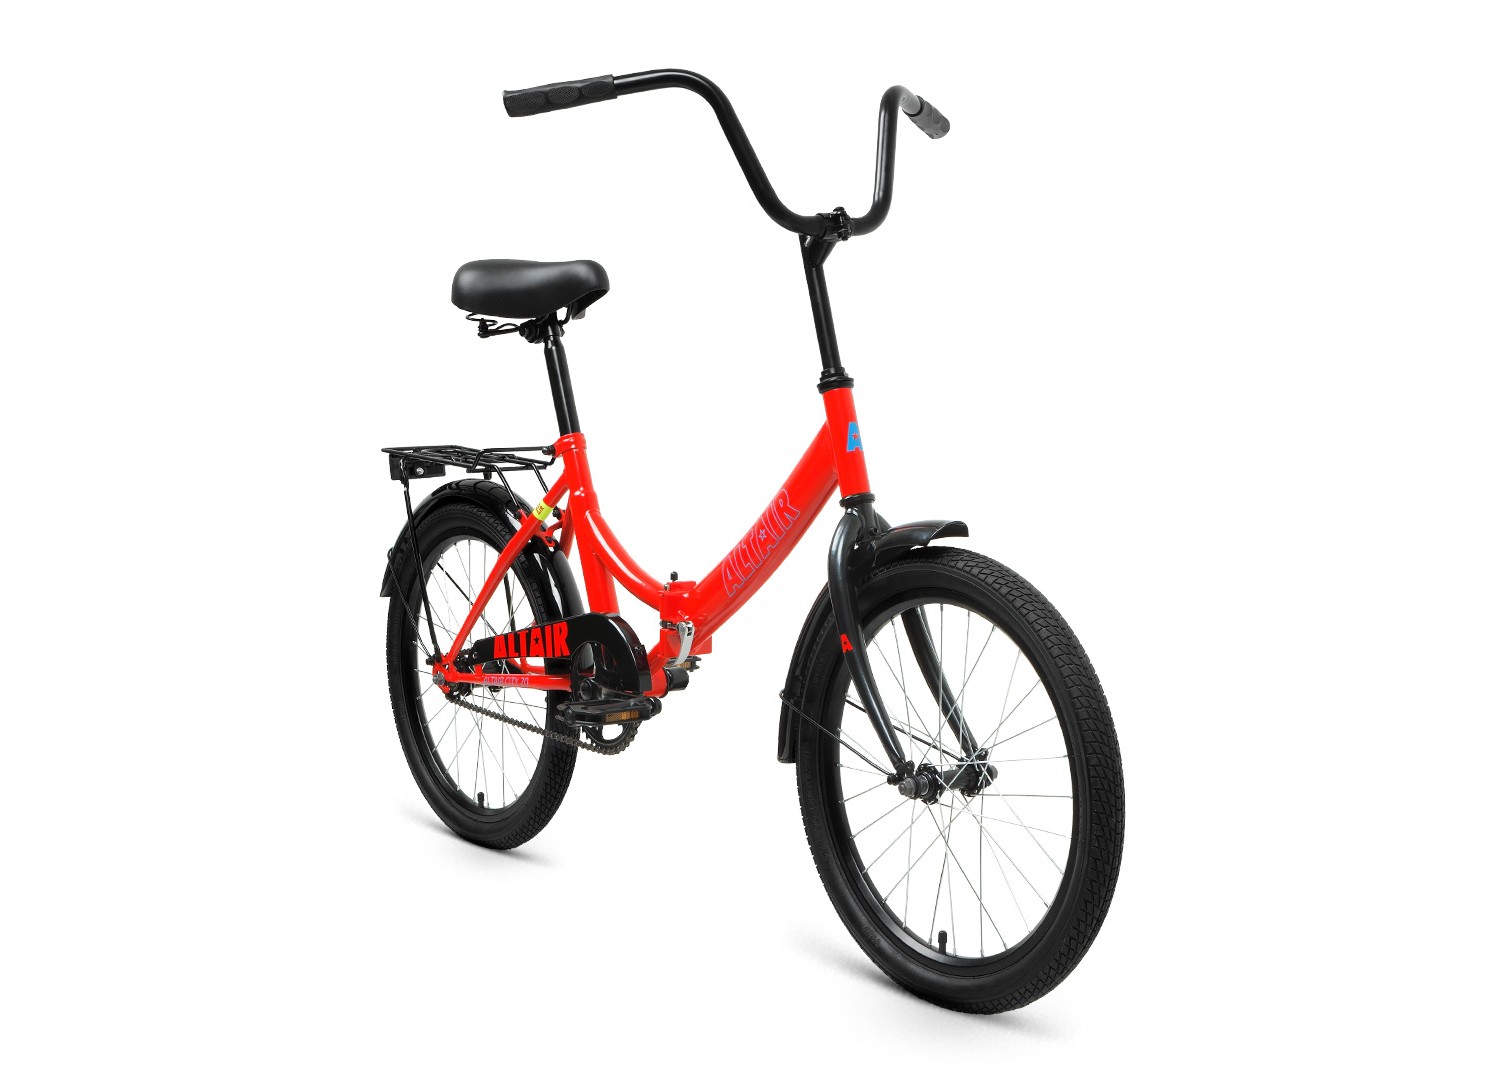 Складной велосипед Altair City 20, год 2022, цвет Зеленый-Черный, ростовка 14